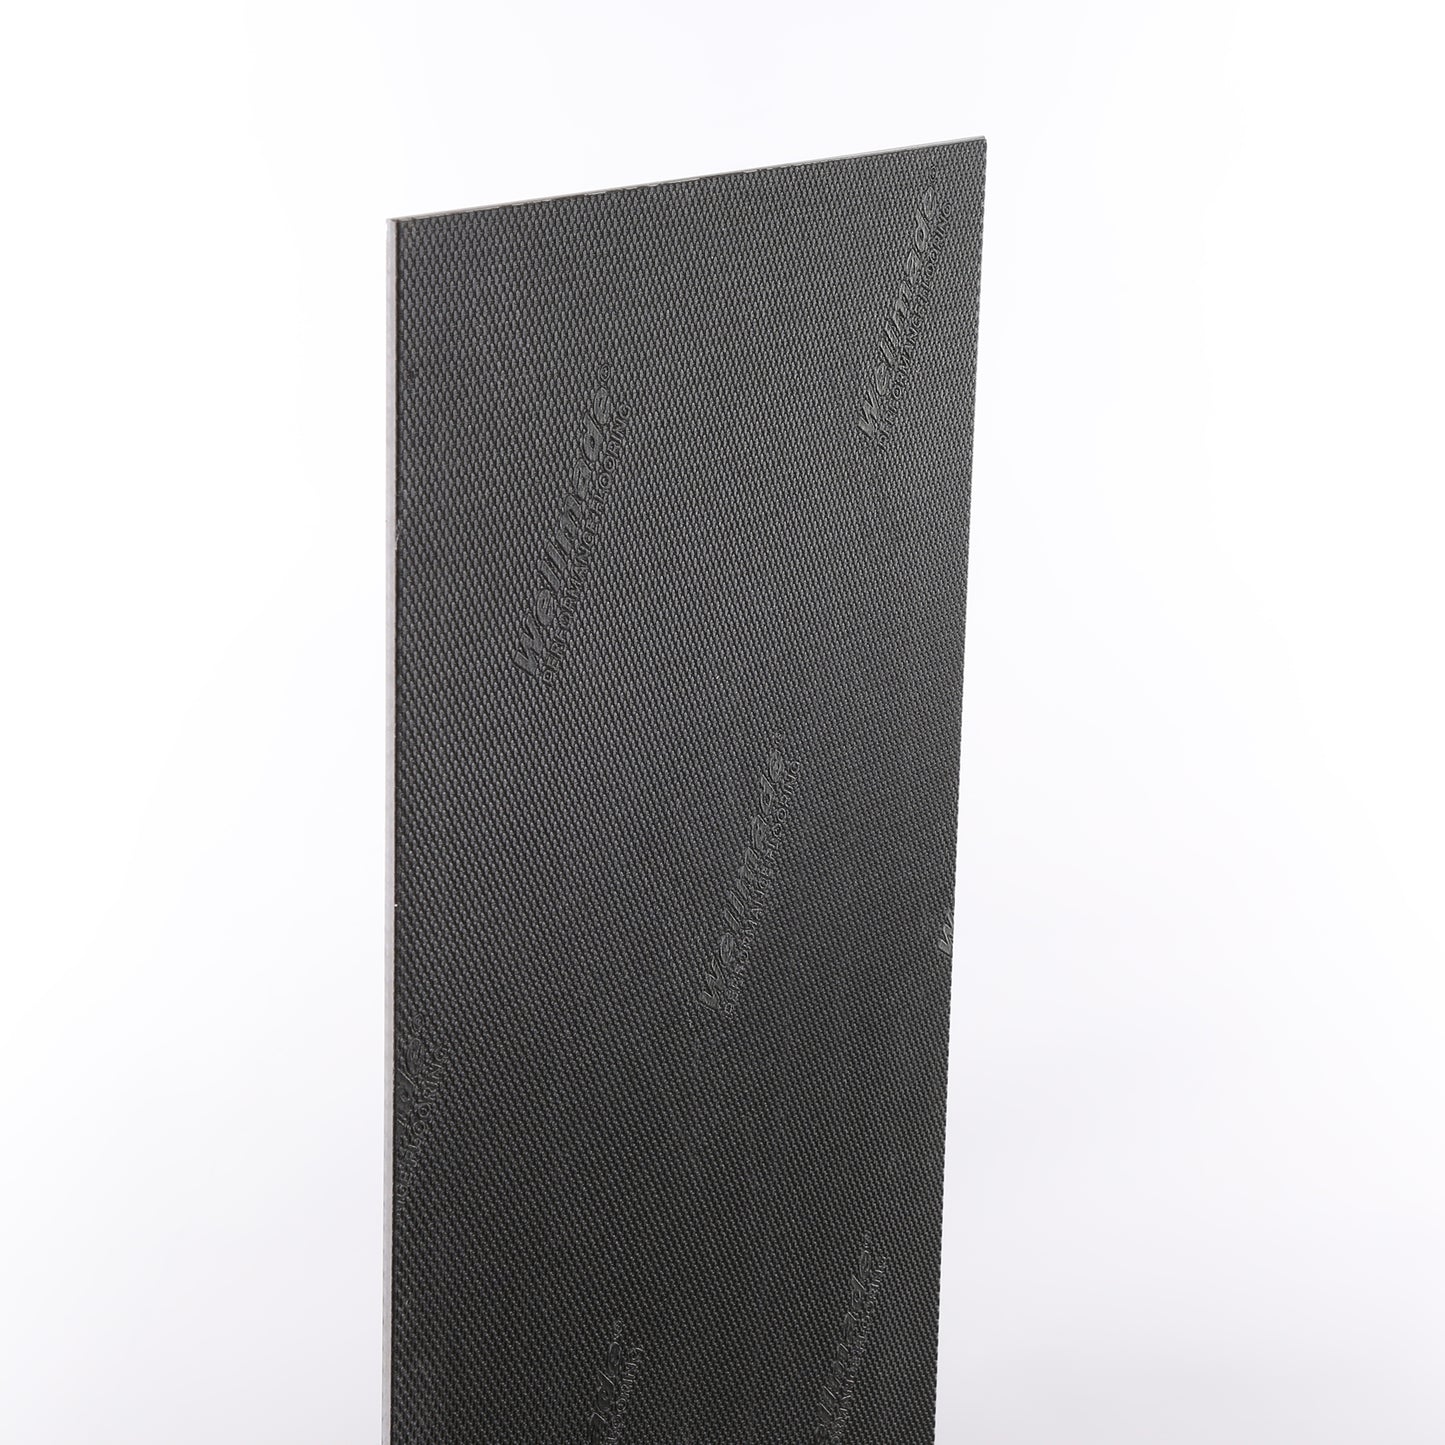 6mm Ainslie Sandstone HDPC® Waterproof Luxury Vinyl Tile Flooring 12 in. Wide x 24 in. Long